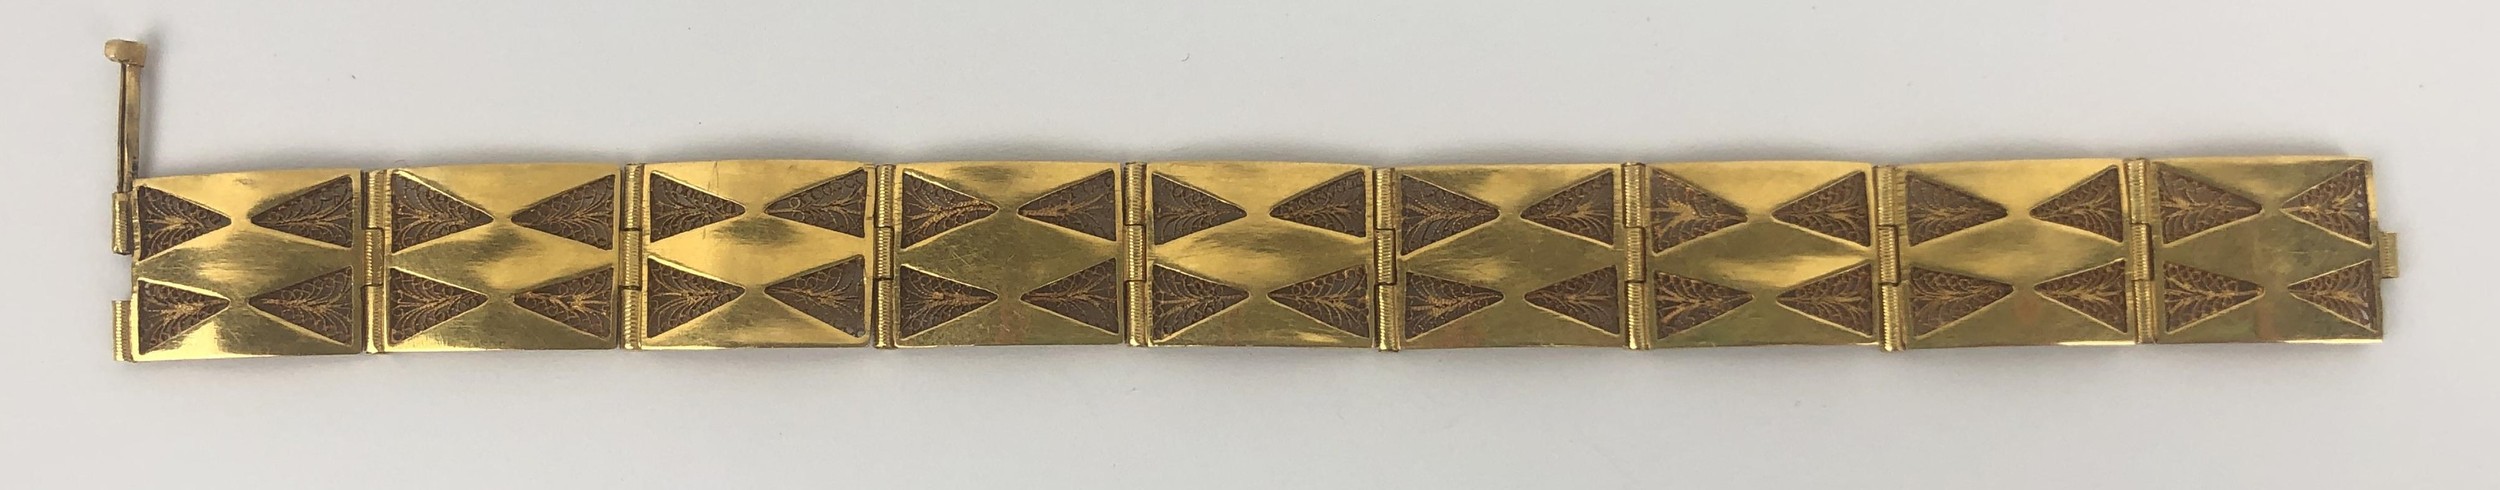 A 21ct gold bracelet, 17.8 g - Image 2 of 5